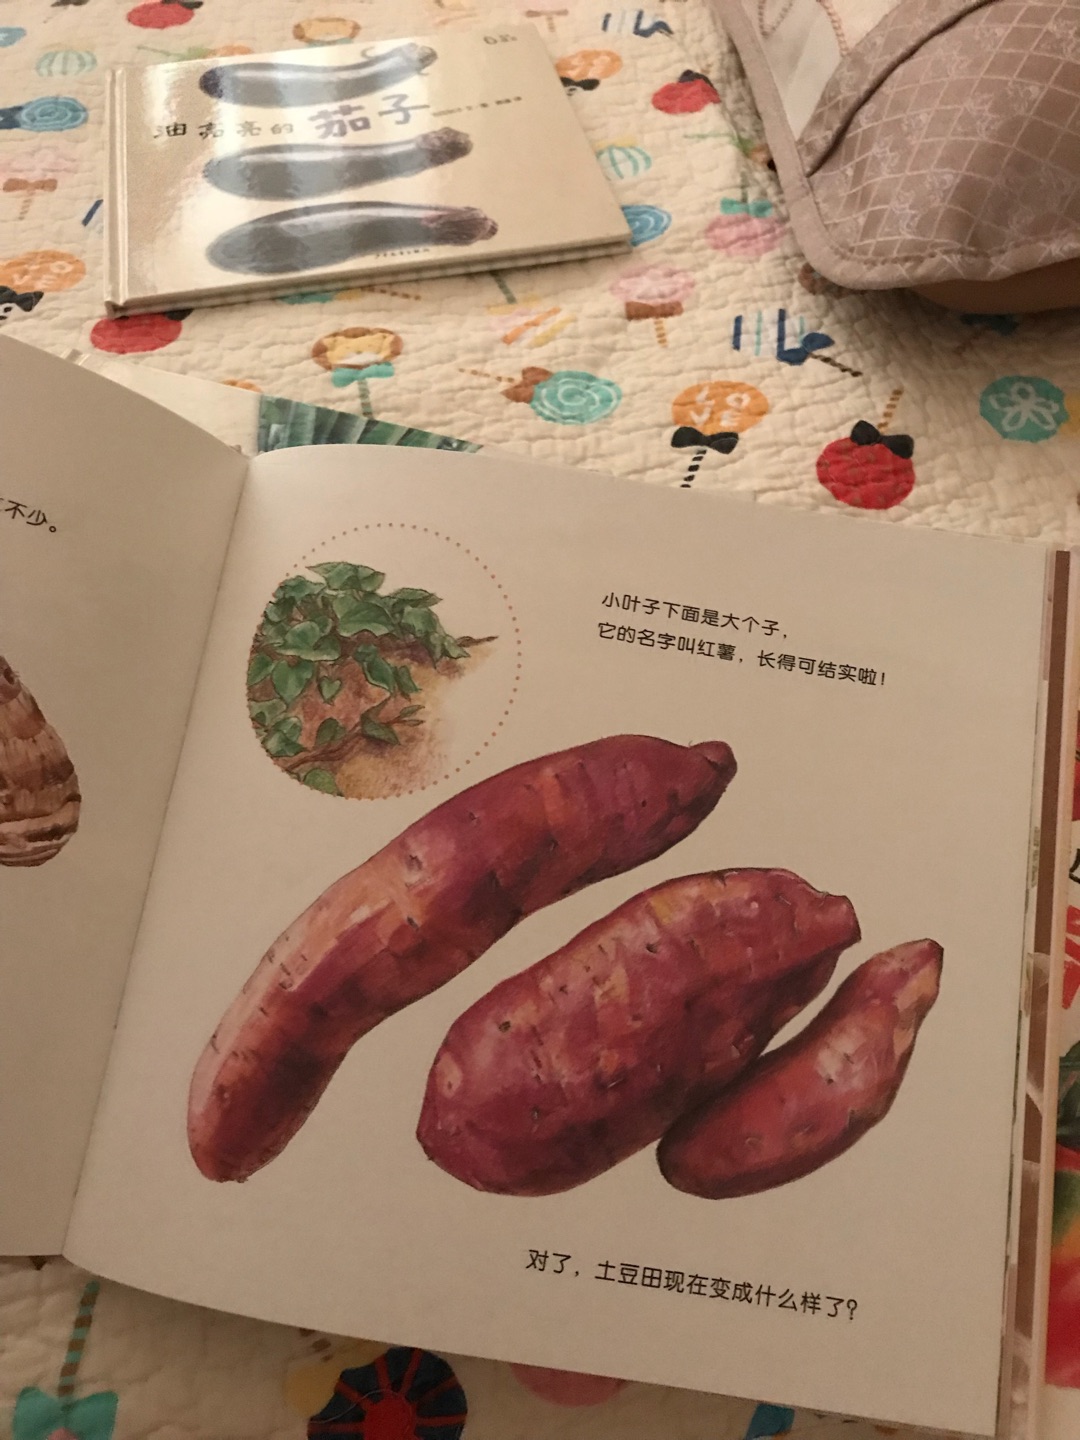 画风很美的一套书，讲了好几种蔬菜的知识，很赞。